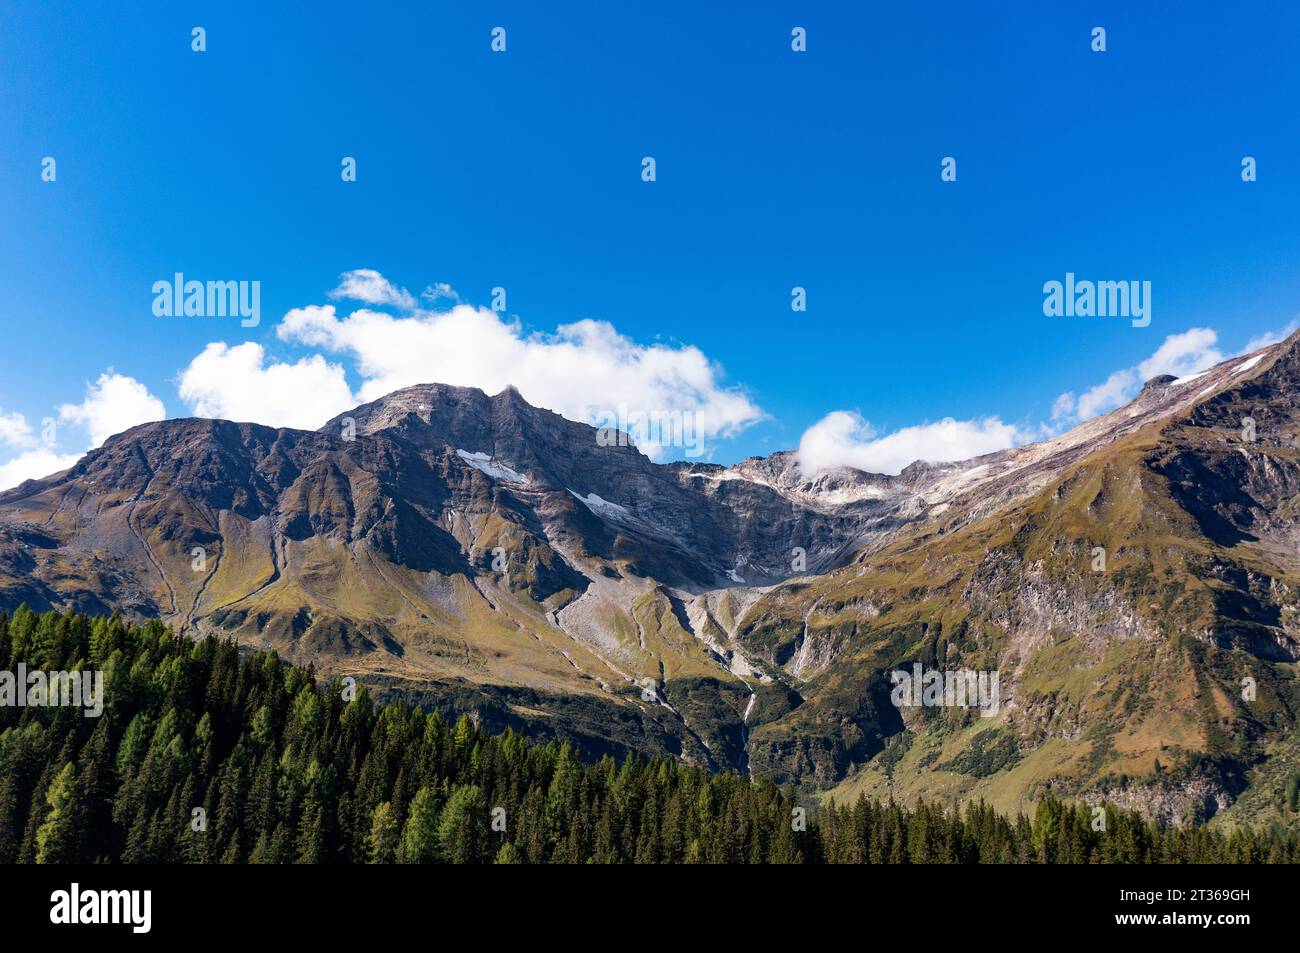 Autriche, Salzburger Land, montagne Hoher Sonnblick dans le parc national Hohe Tauern Banque D'Images